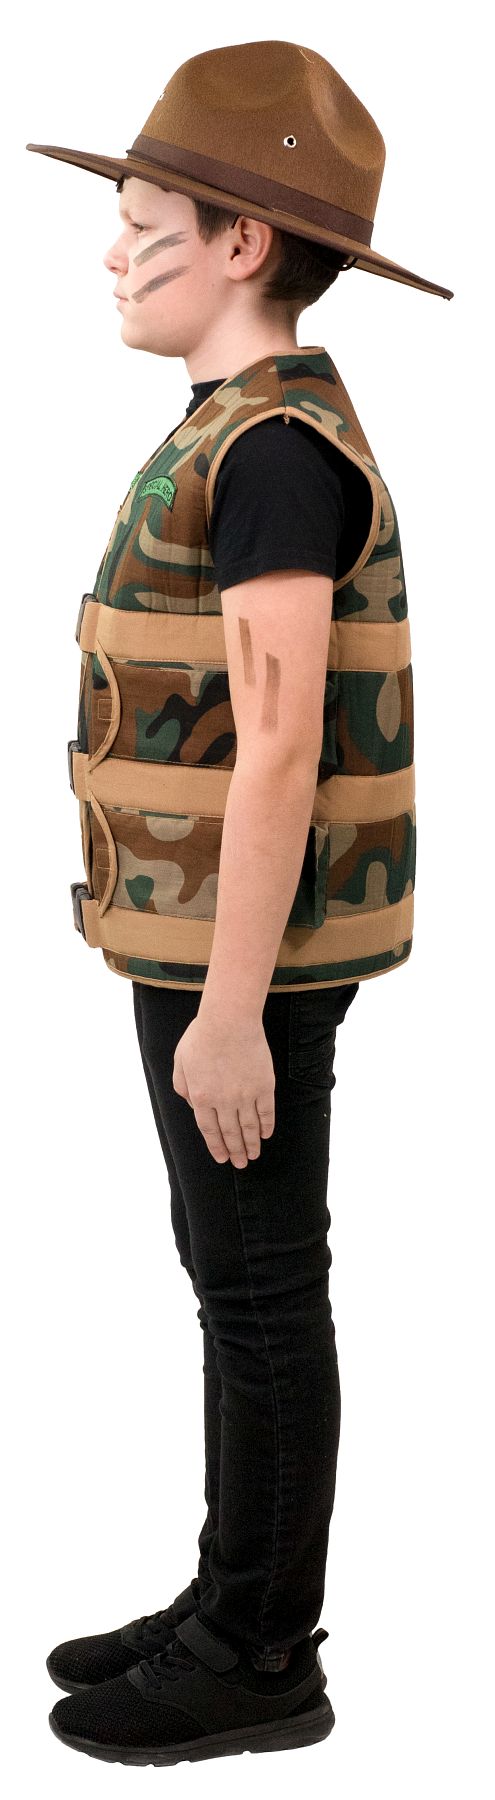 Ranger vest for children's